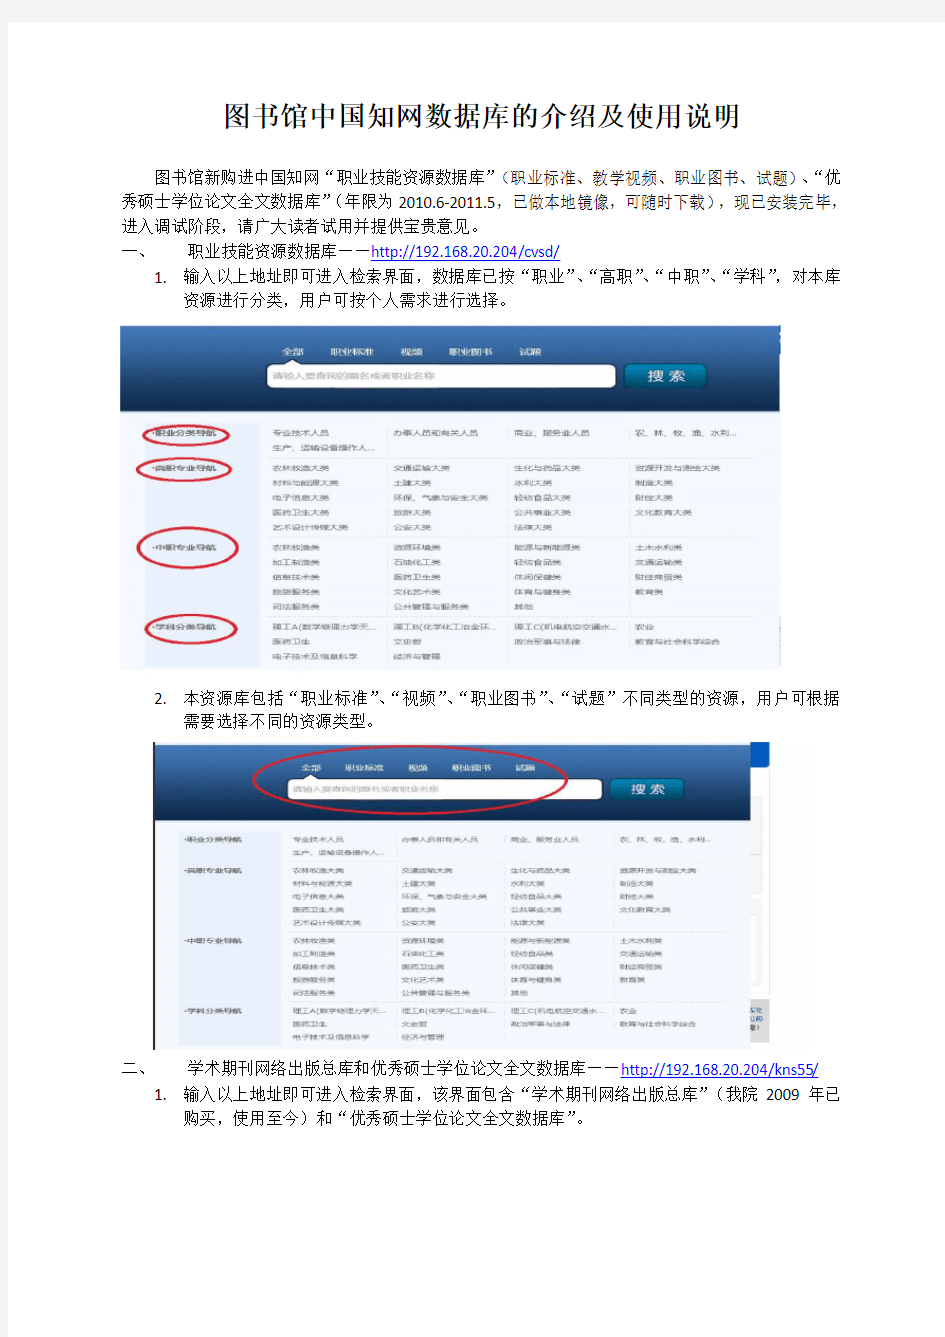 图书馆中国知网数据库的介绍及使用说明